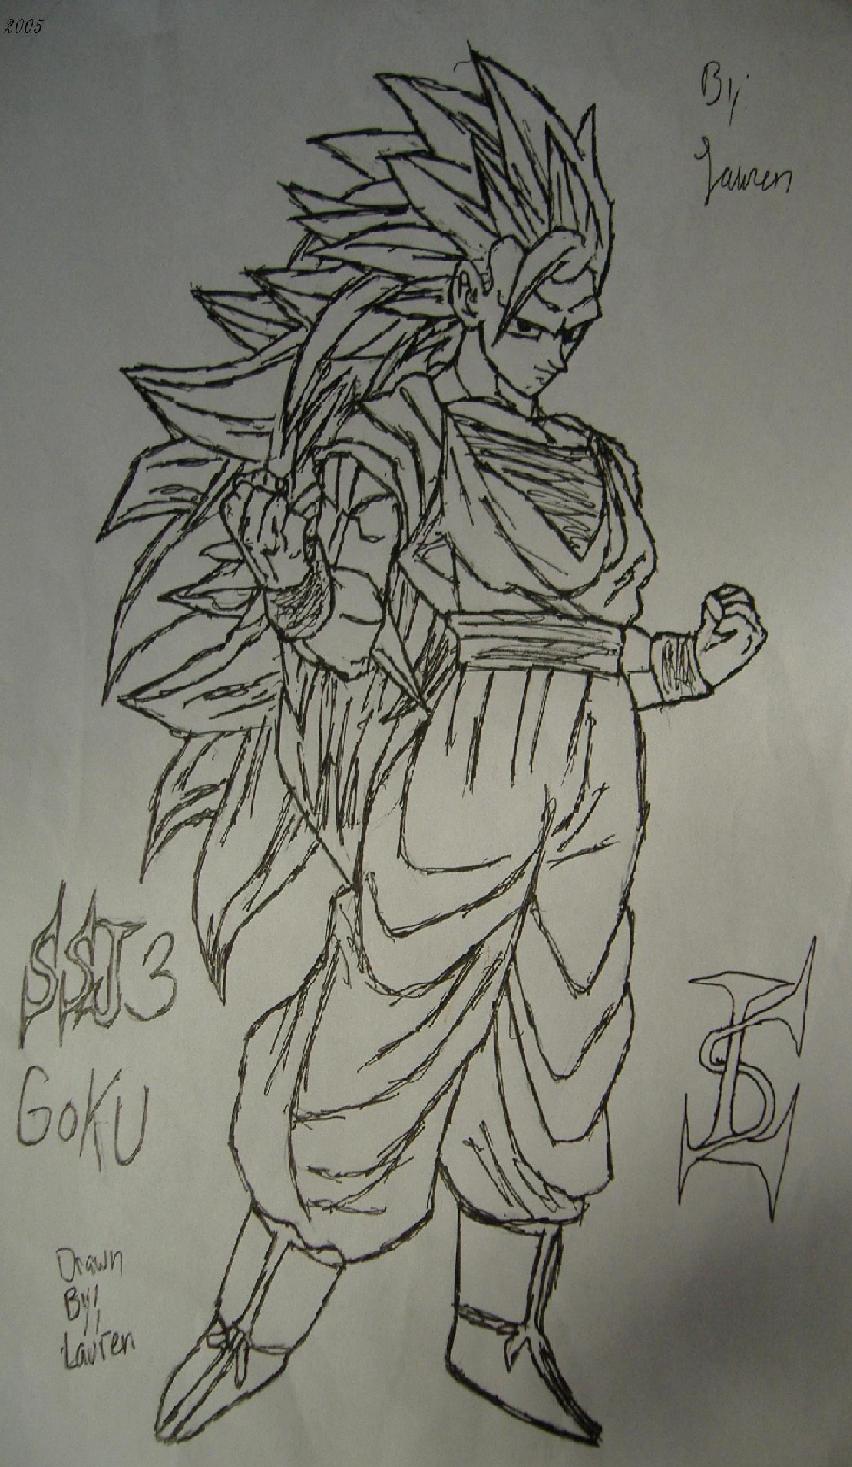 SSJ3 Goku by RavenTT87